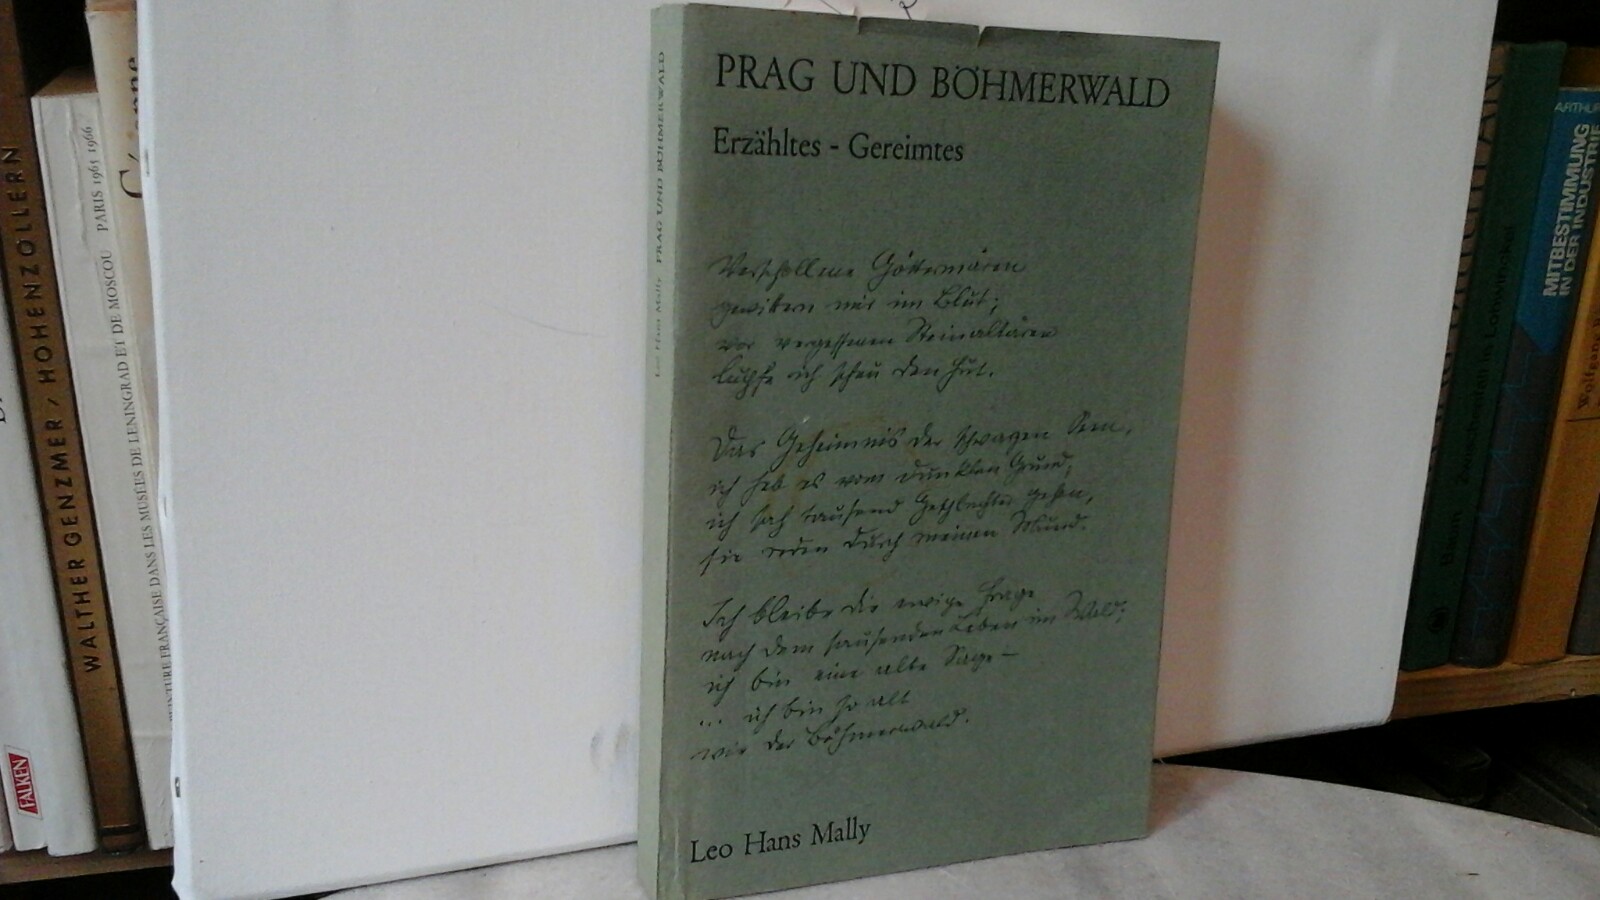 MALLY, LEO HANS: Prag und Bhmerwald. Erzhltes, Gereimtes. Erste /1./ Ausgabe.